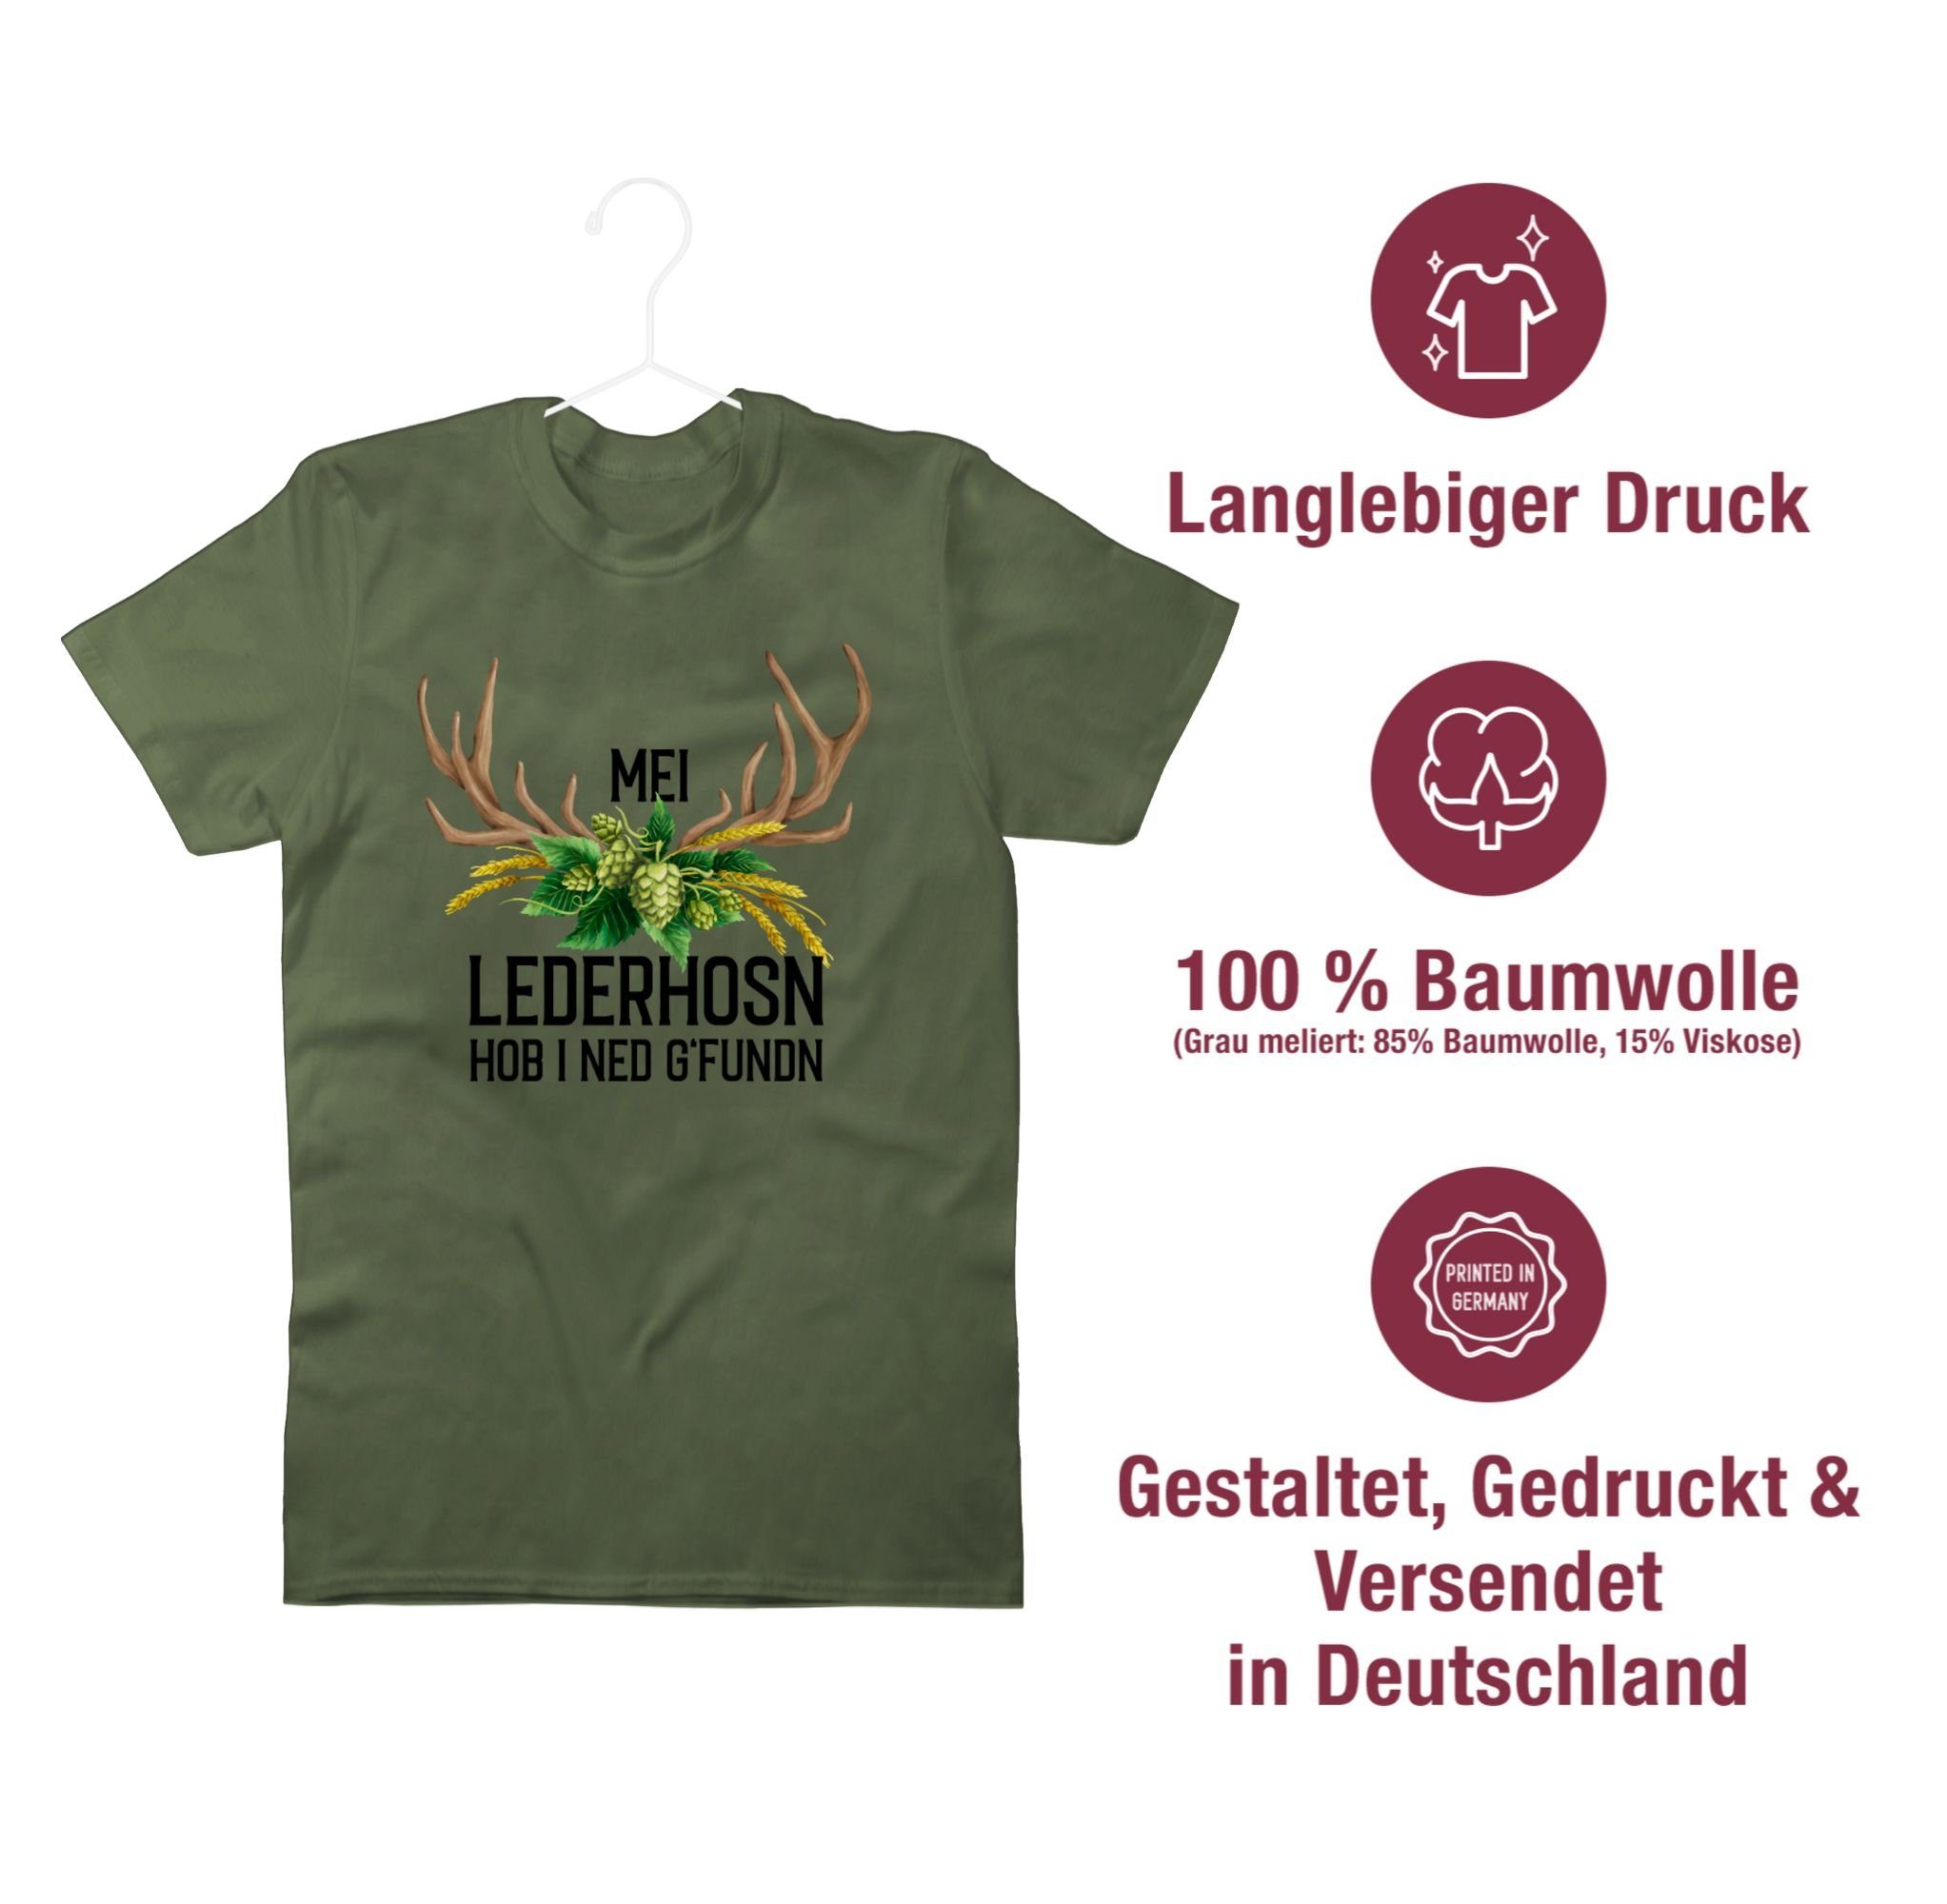 Shirtracer T-Shirt Hopfen i Grün g'fundn Lederhosn Oktoberfest für Hirschgeweih - Herren 01 ned Army Weizen hob Mei Mode und